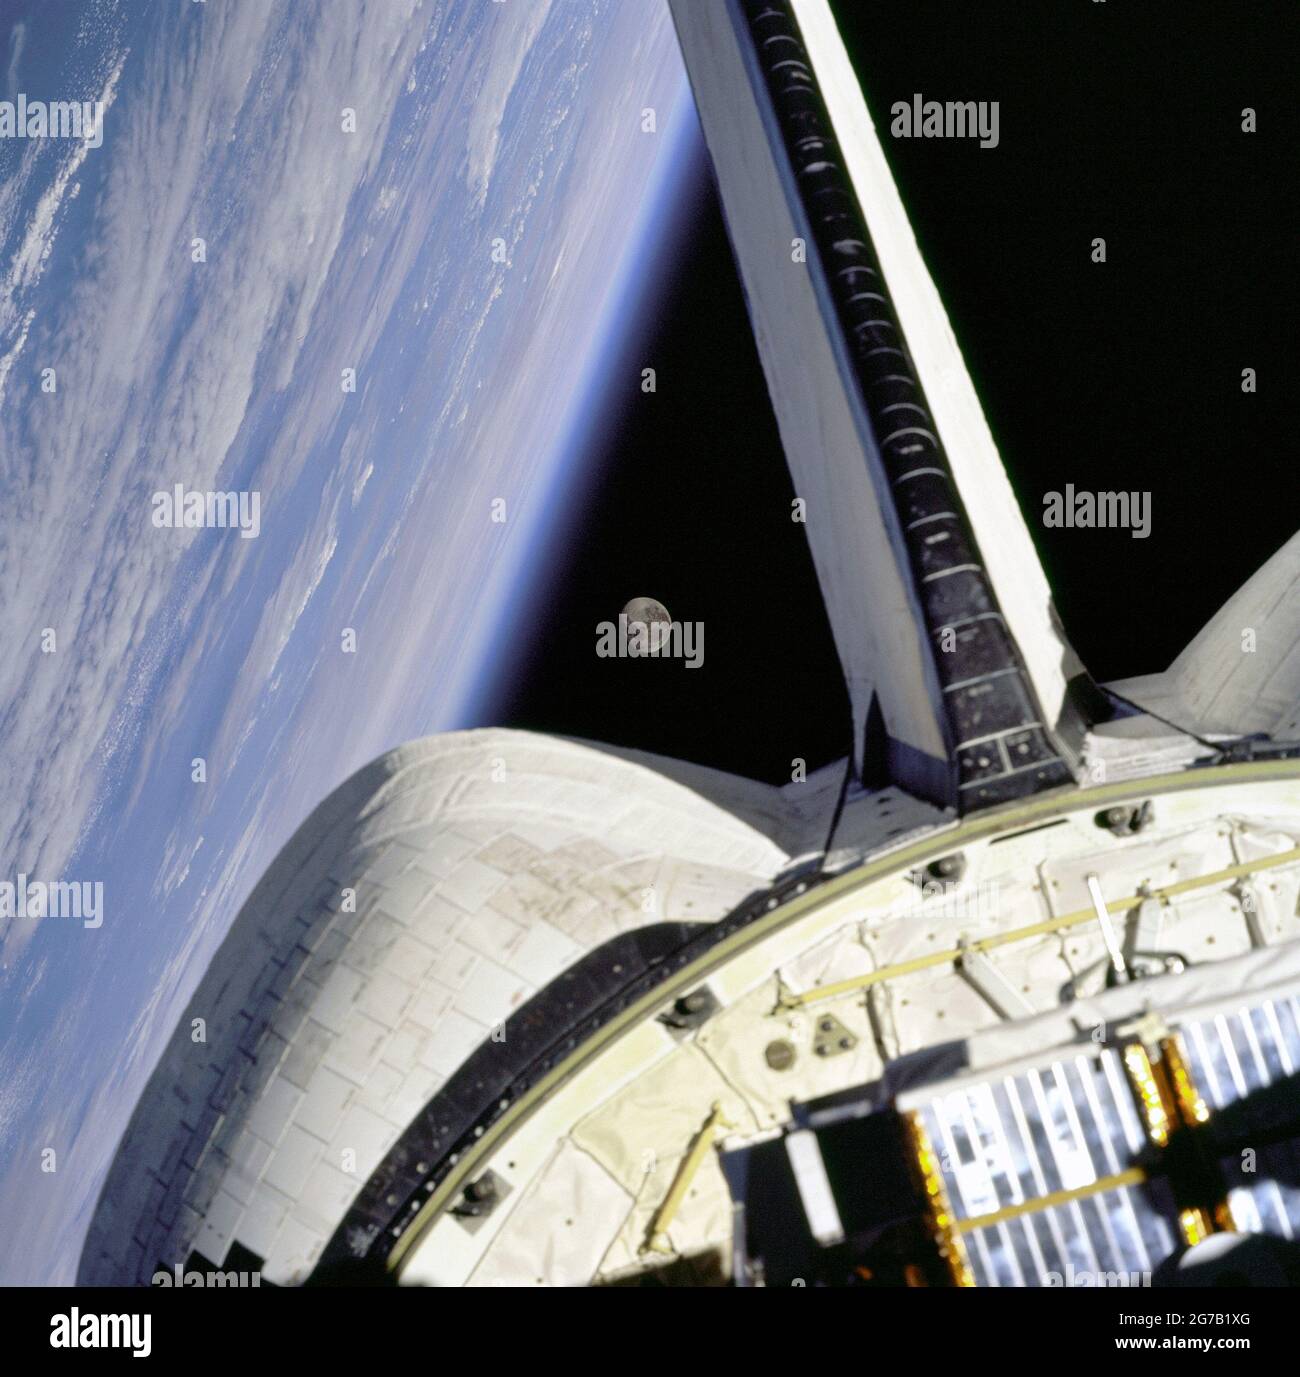 Der Mond gerahmt zwischen der OMS-Kapsel des Orbiters und dem Erdglied über dem Atlantik, aus der Sicht der Fenster an Bord des Space Shuttle Discovery auf der Mission STS-95. Eine optimierte und digital verbesserte Version eines NASA-Bildes/Credit NASA. Stockfoto